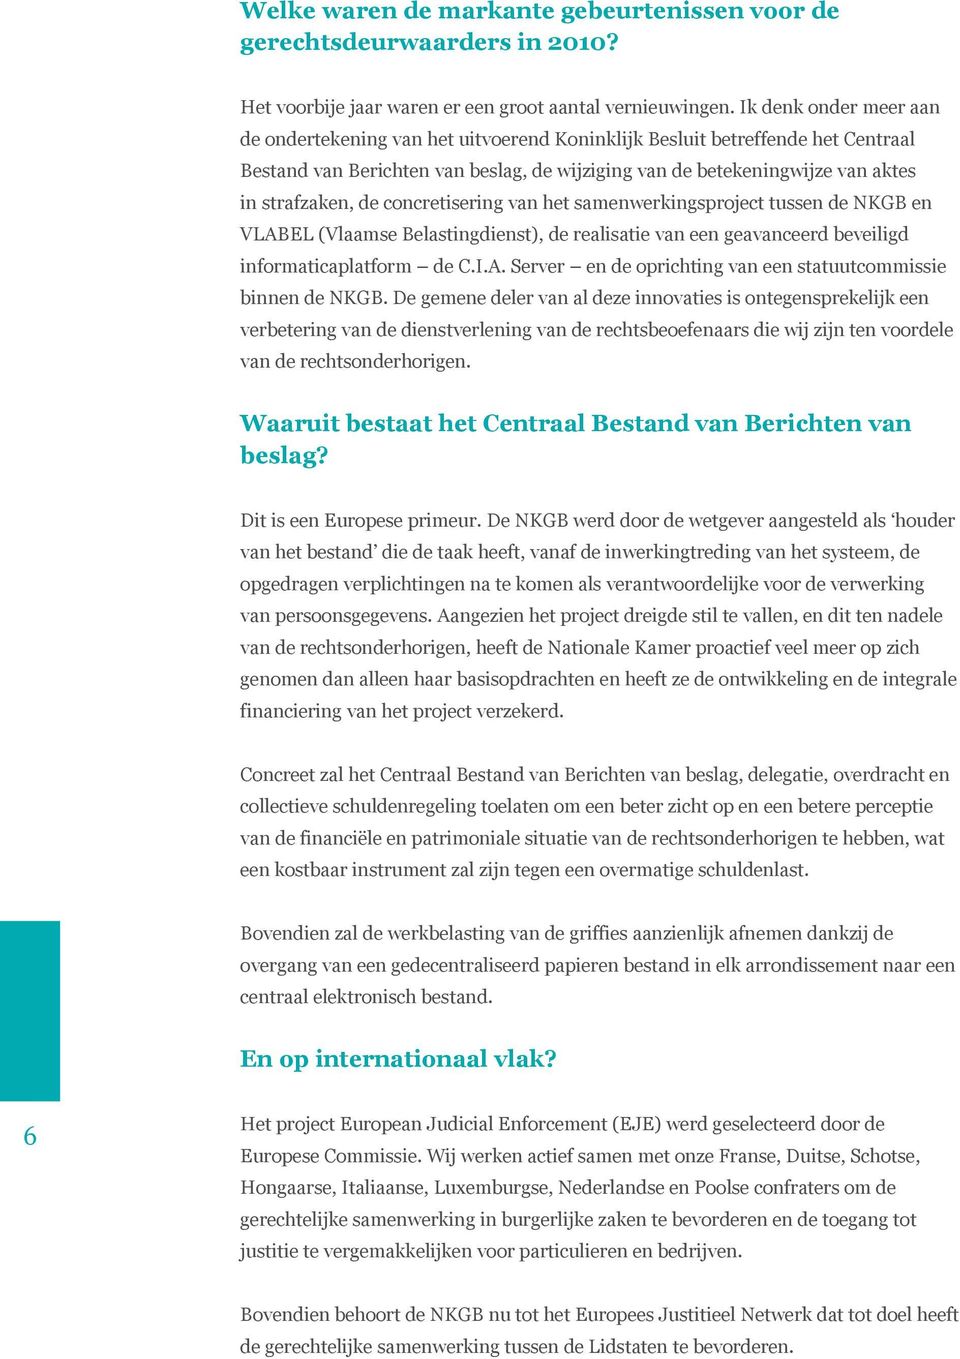 de concretisering van het samenwerkingsproject tussen de NKGB en VLABEL (Vlaamse Belastingdienst), de realisatie van een geavanceerd beveiligd informaticaplatform de C.I.A. Server en de oprichting van een statuutcommissie binnen de NKGB.